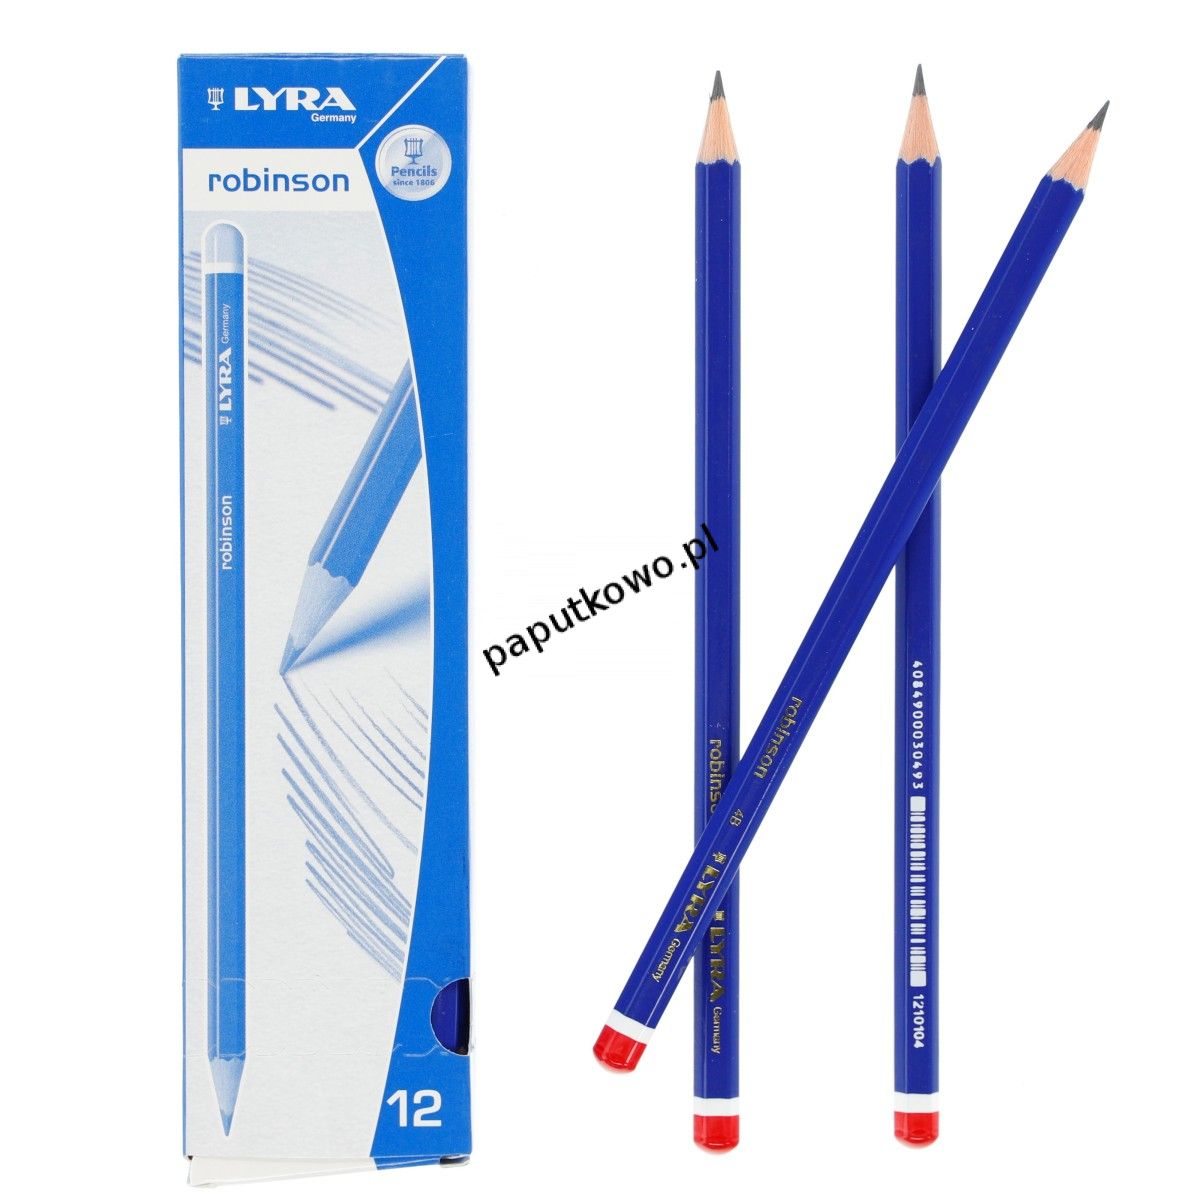 Ołówek techniczny Lyra Robinson (L1210104)